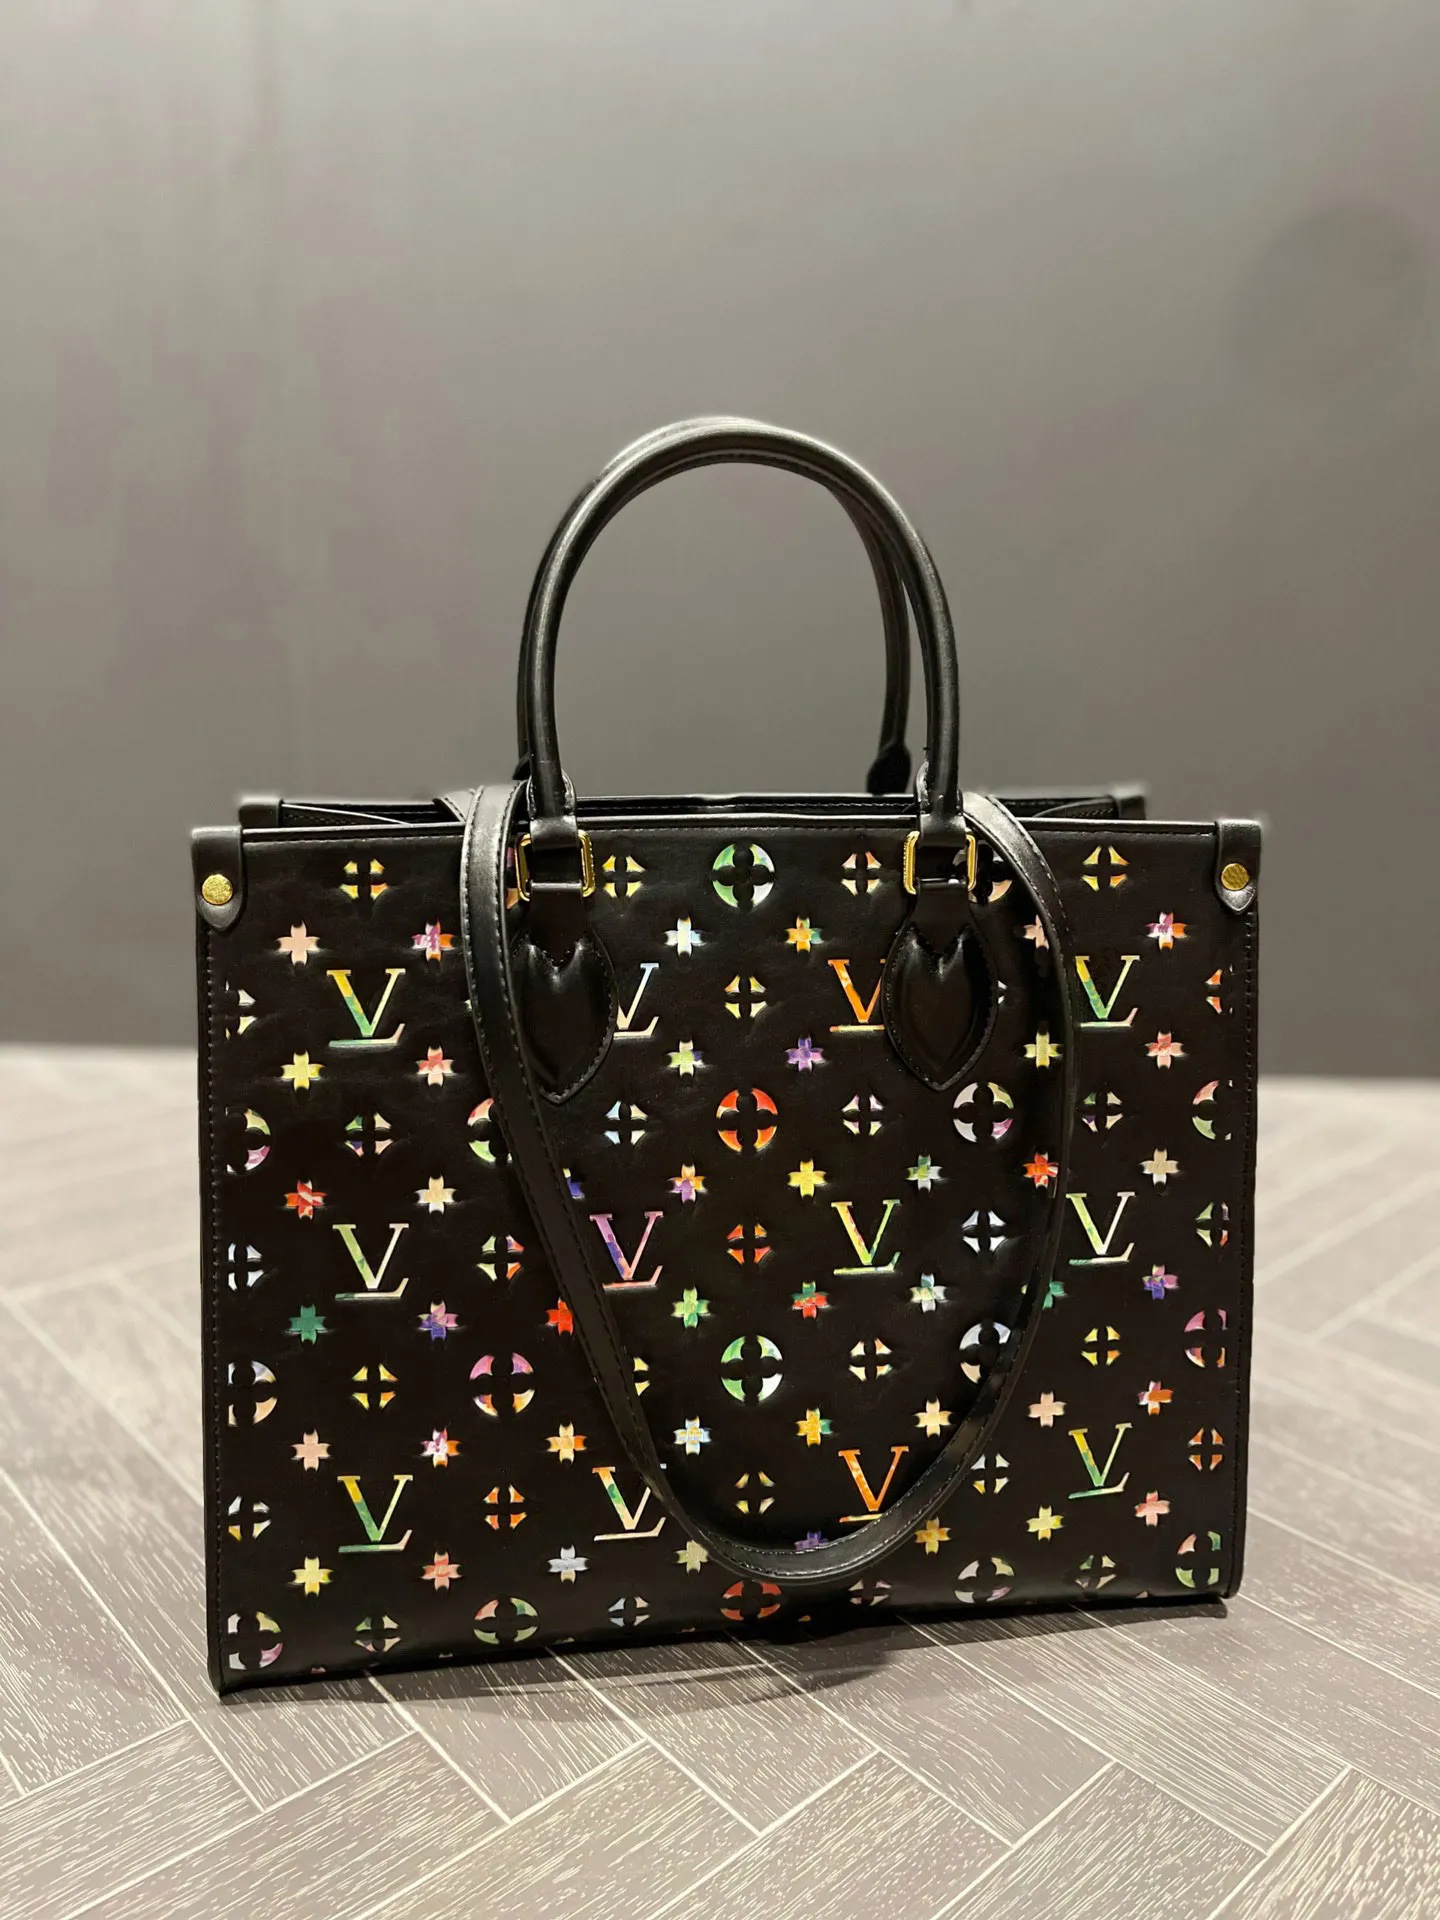 TZ Damen Luxus -Taschen Designer -Marke auf dem farbenfrohen Druckmuster Einkaufstaschen Mode -Tasche Freizeitumhängentasche Praktische Kapazität Handtasche 35 cm